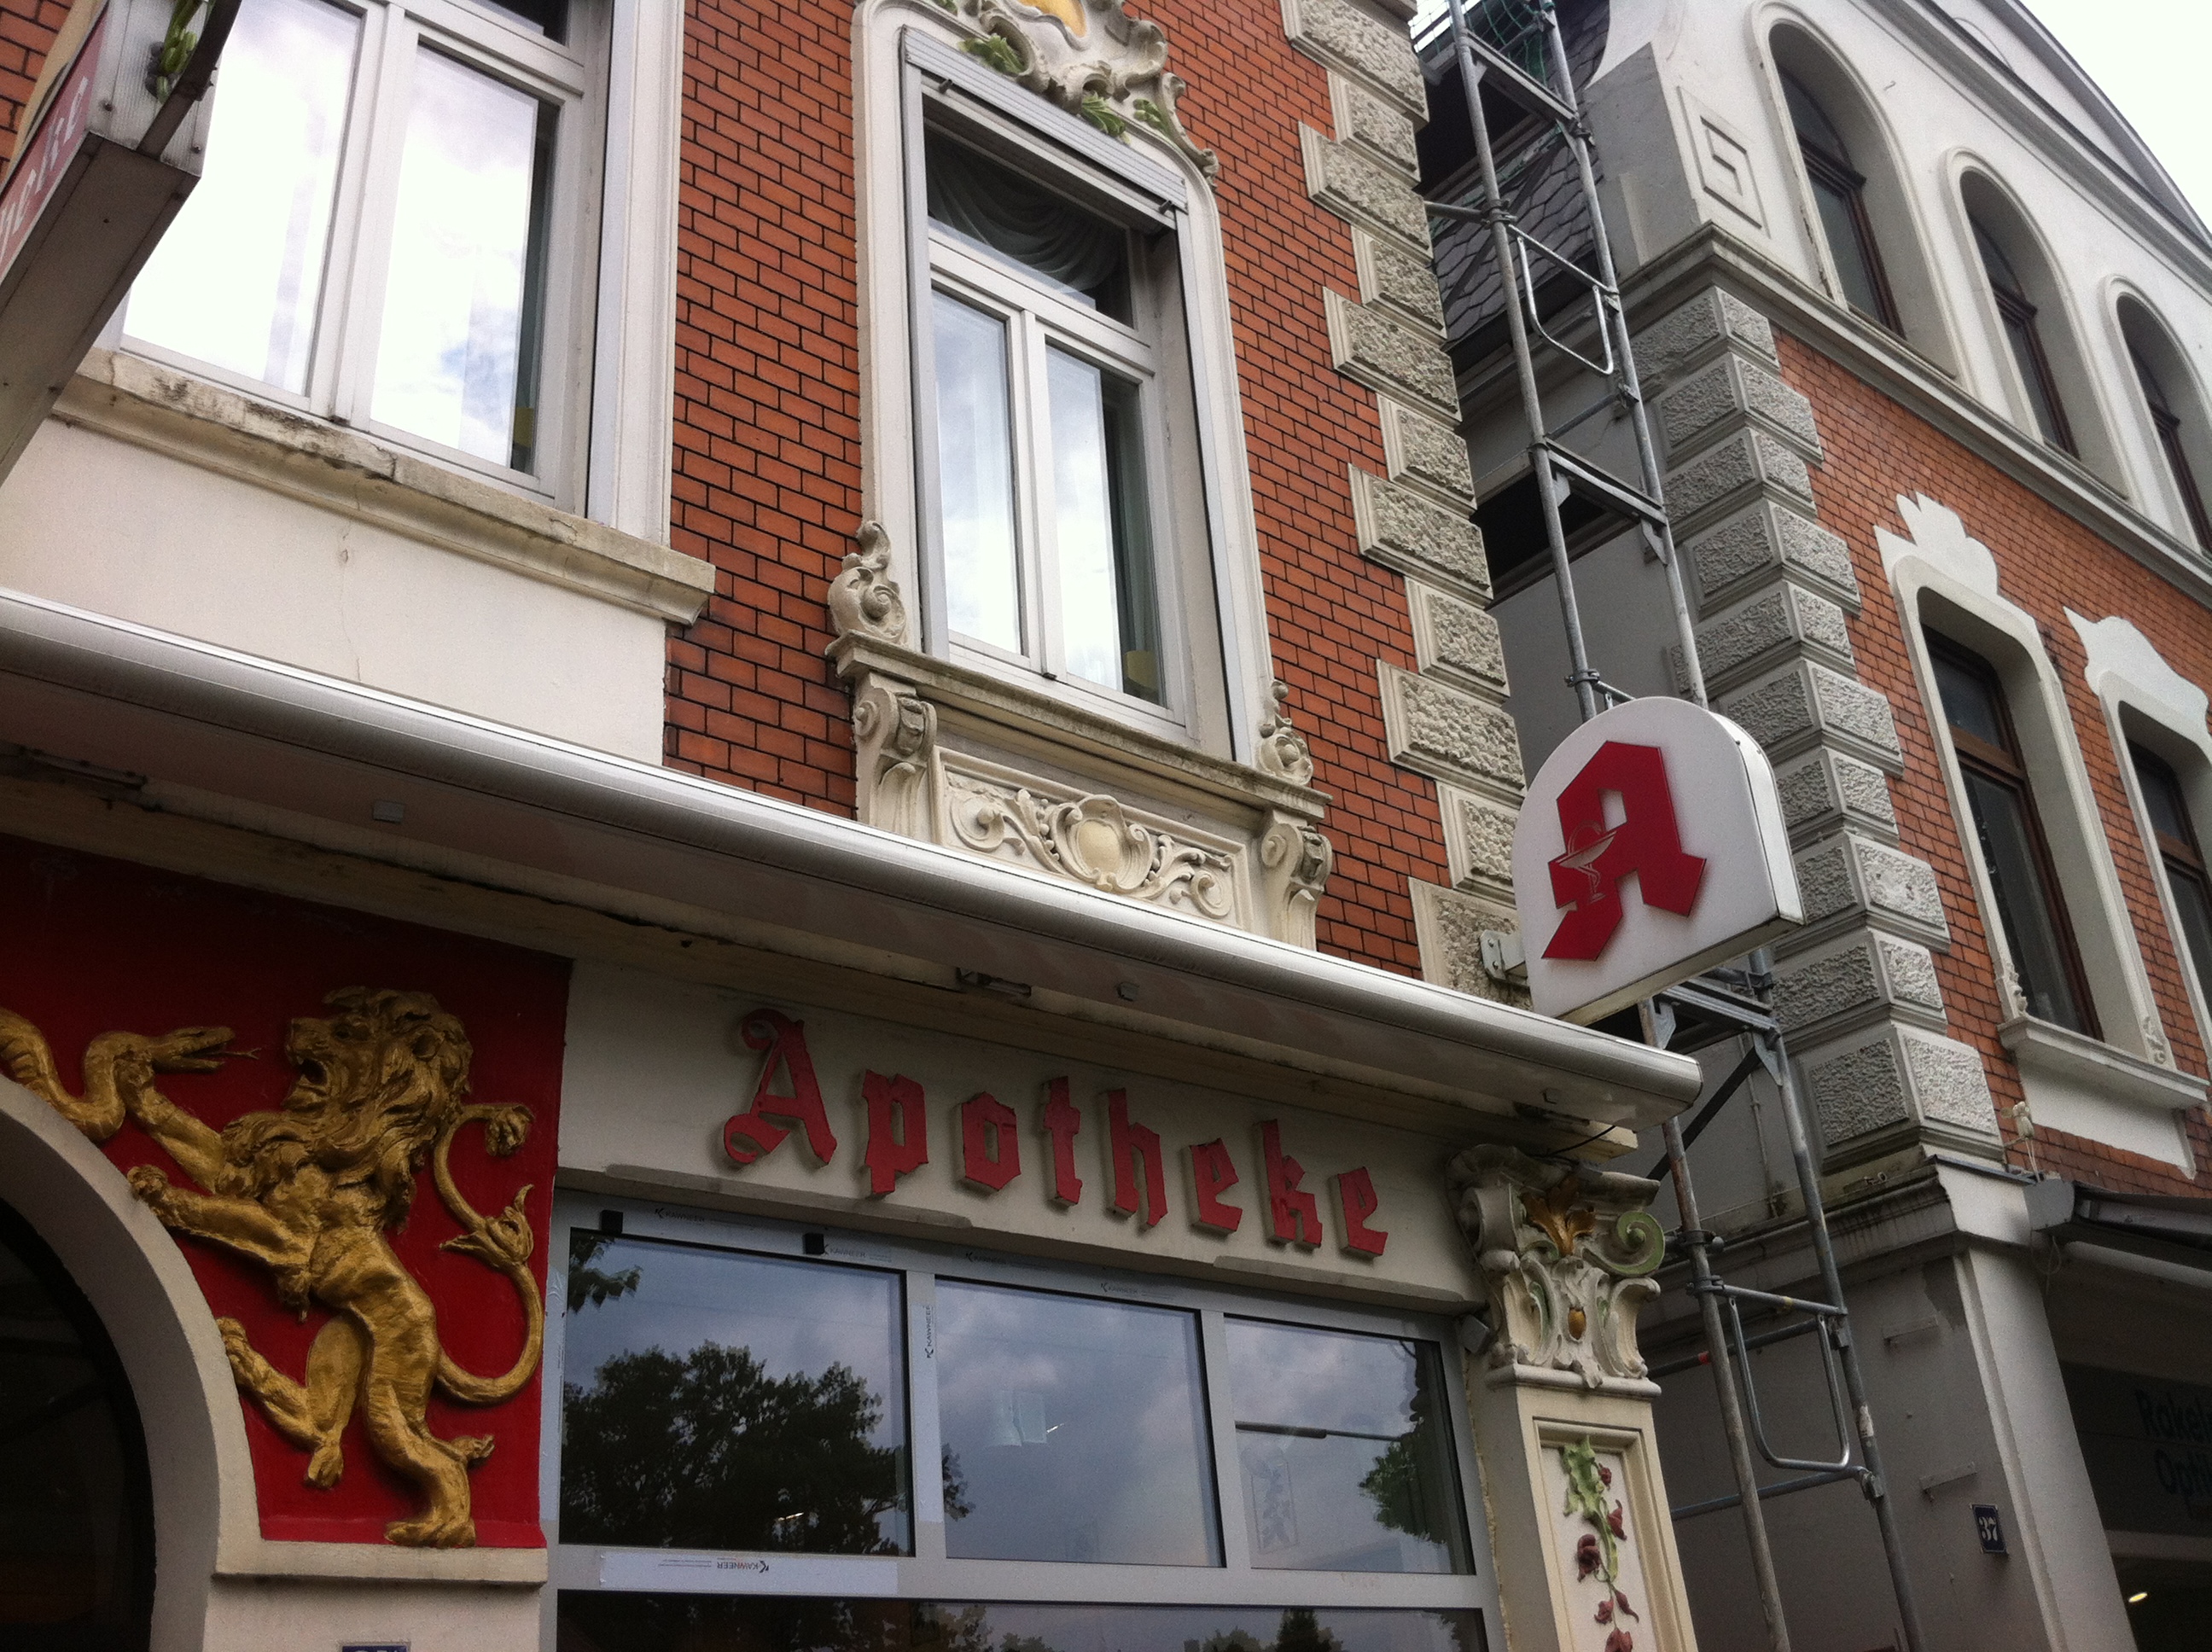 Schöne alte Häuser in Oldenburg - hier die Löwen Apotheke